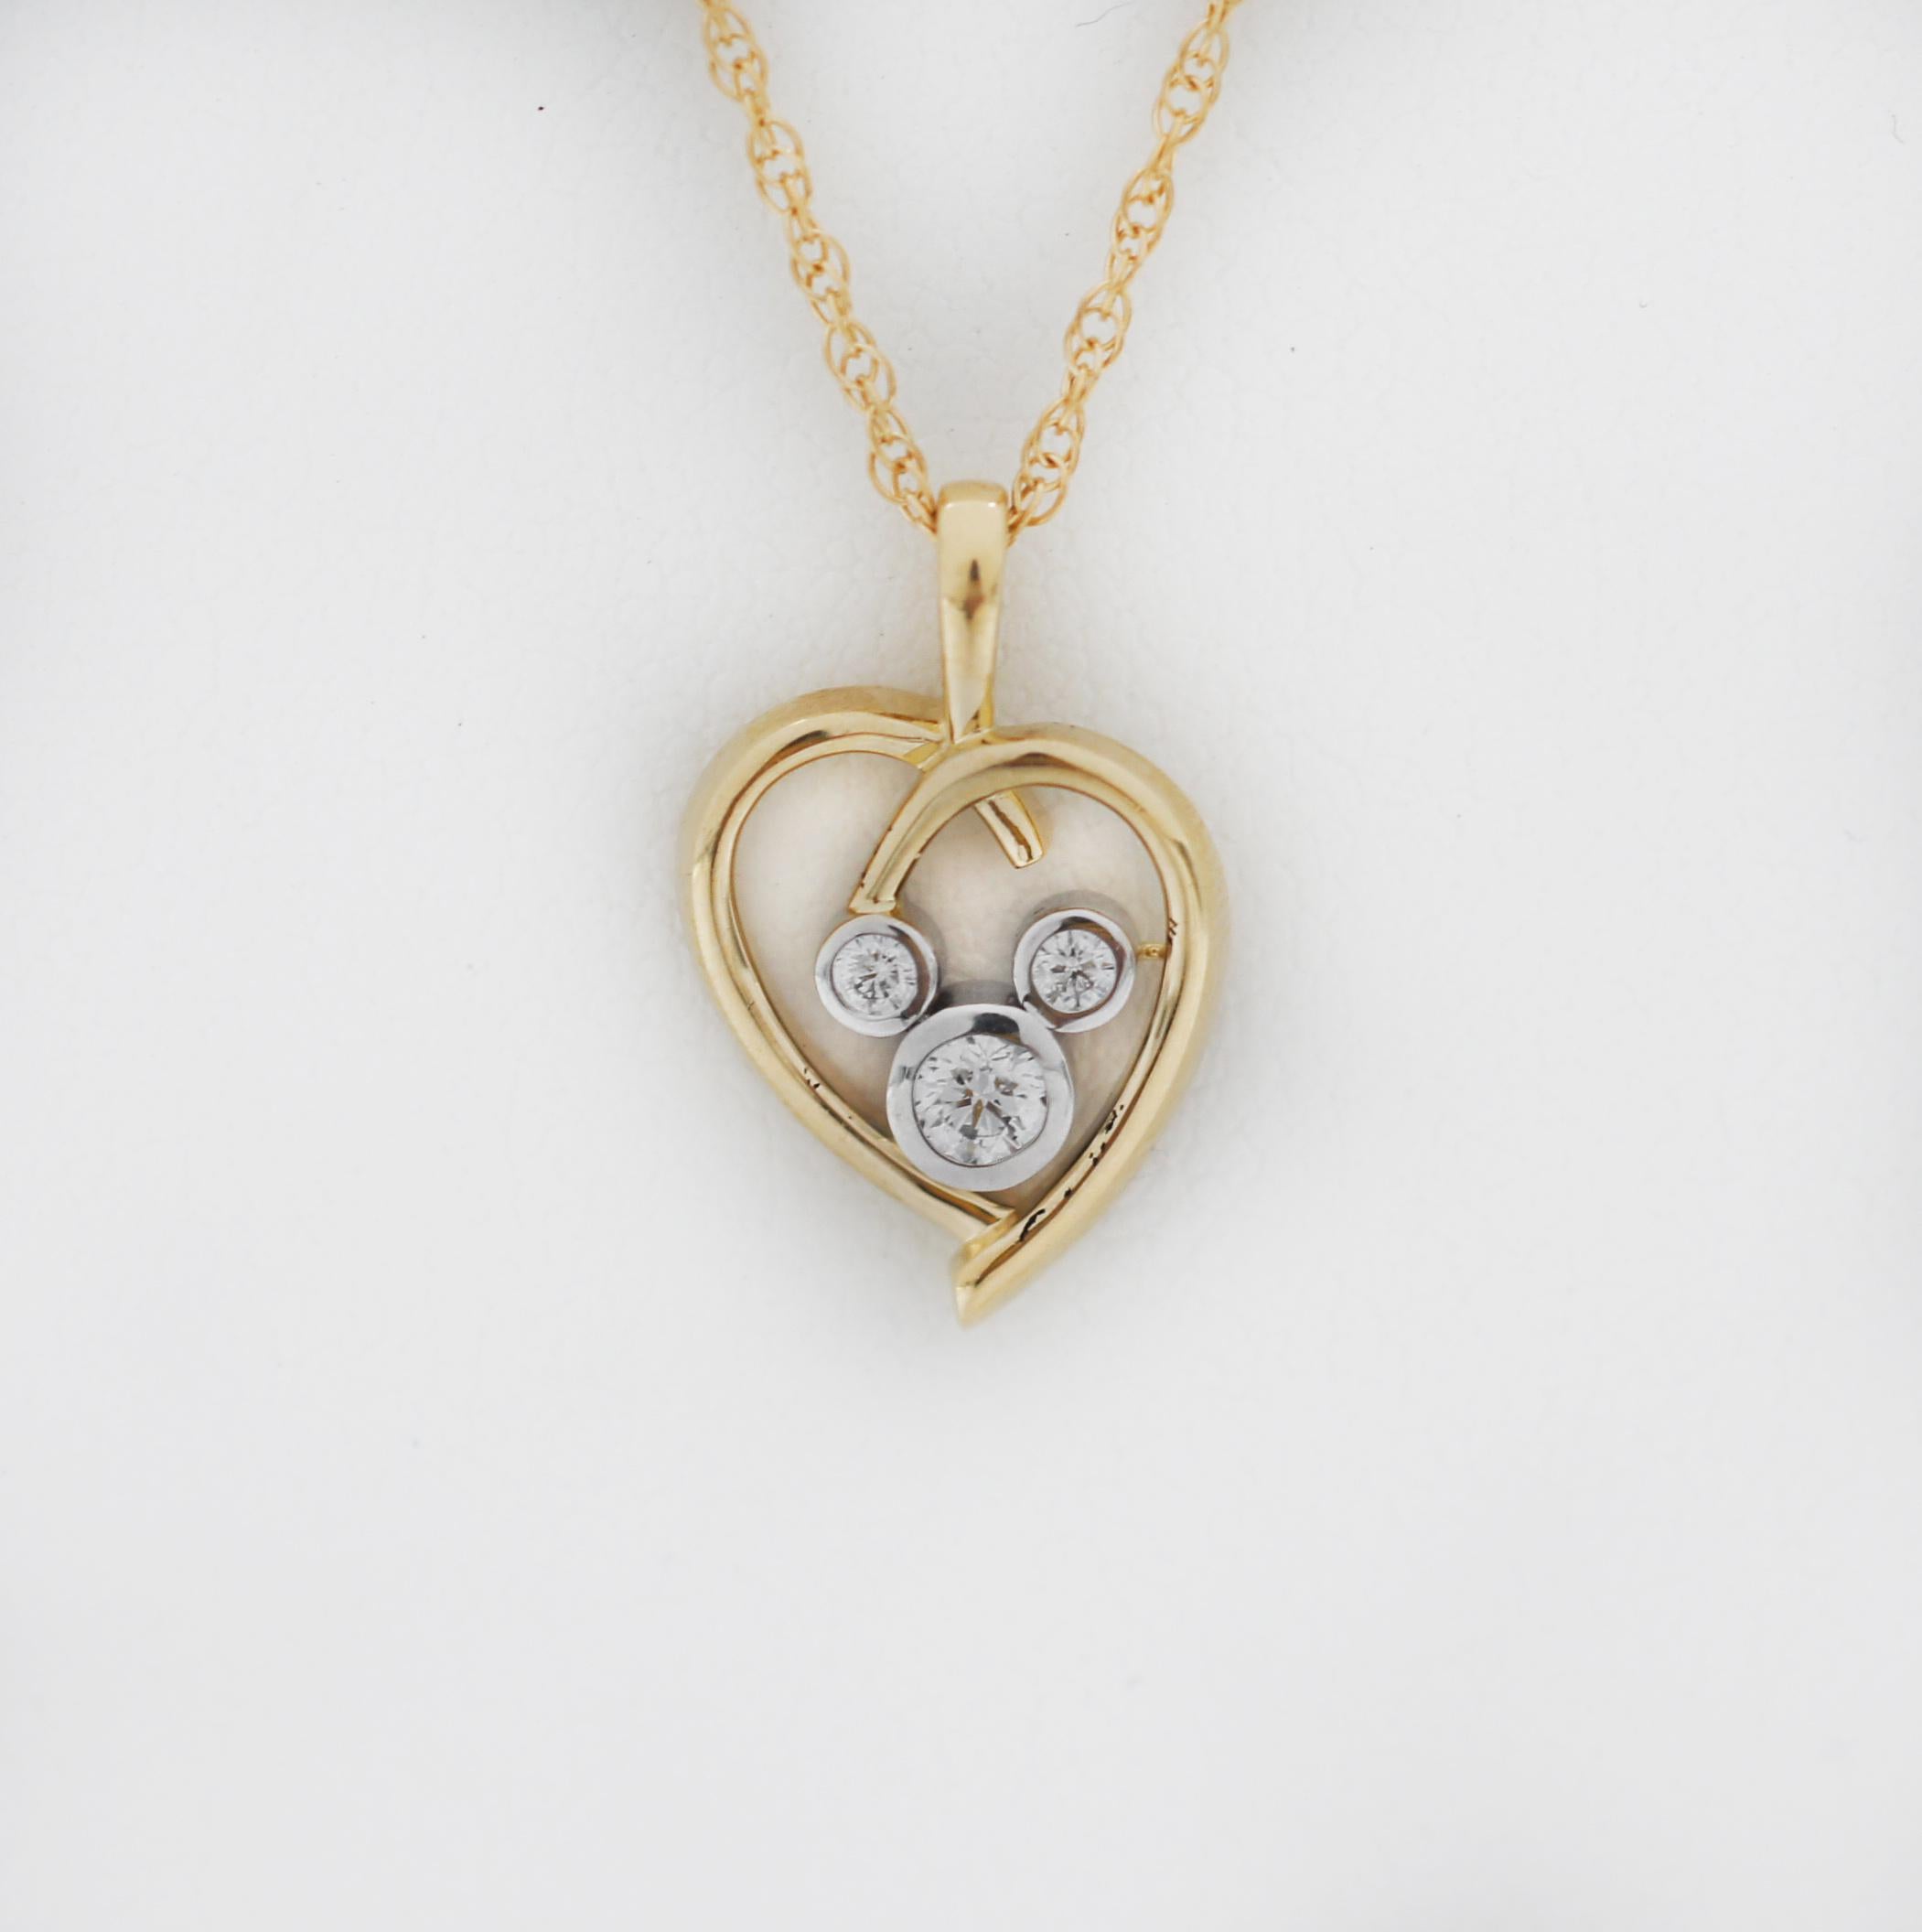 (c) A.I.C.
L'icône de Mickey incrustée de diamants brille dans le cœur en or 14 carats de ce collier Mickey Mouse. Pour les romantiques et les amoureux de Mickey partout, cet élégant collier offrira une vie entière de moments en or.
La magie des